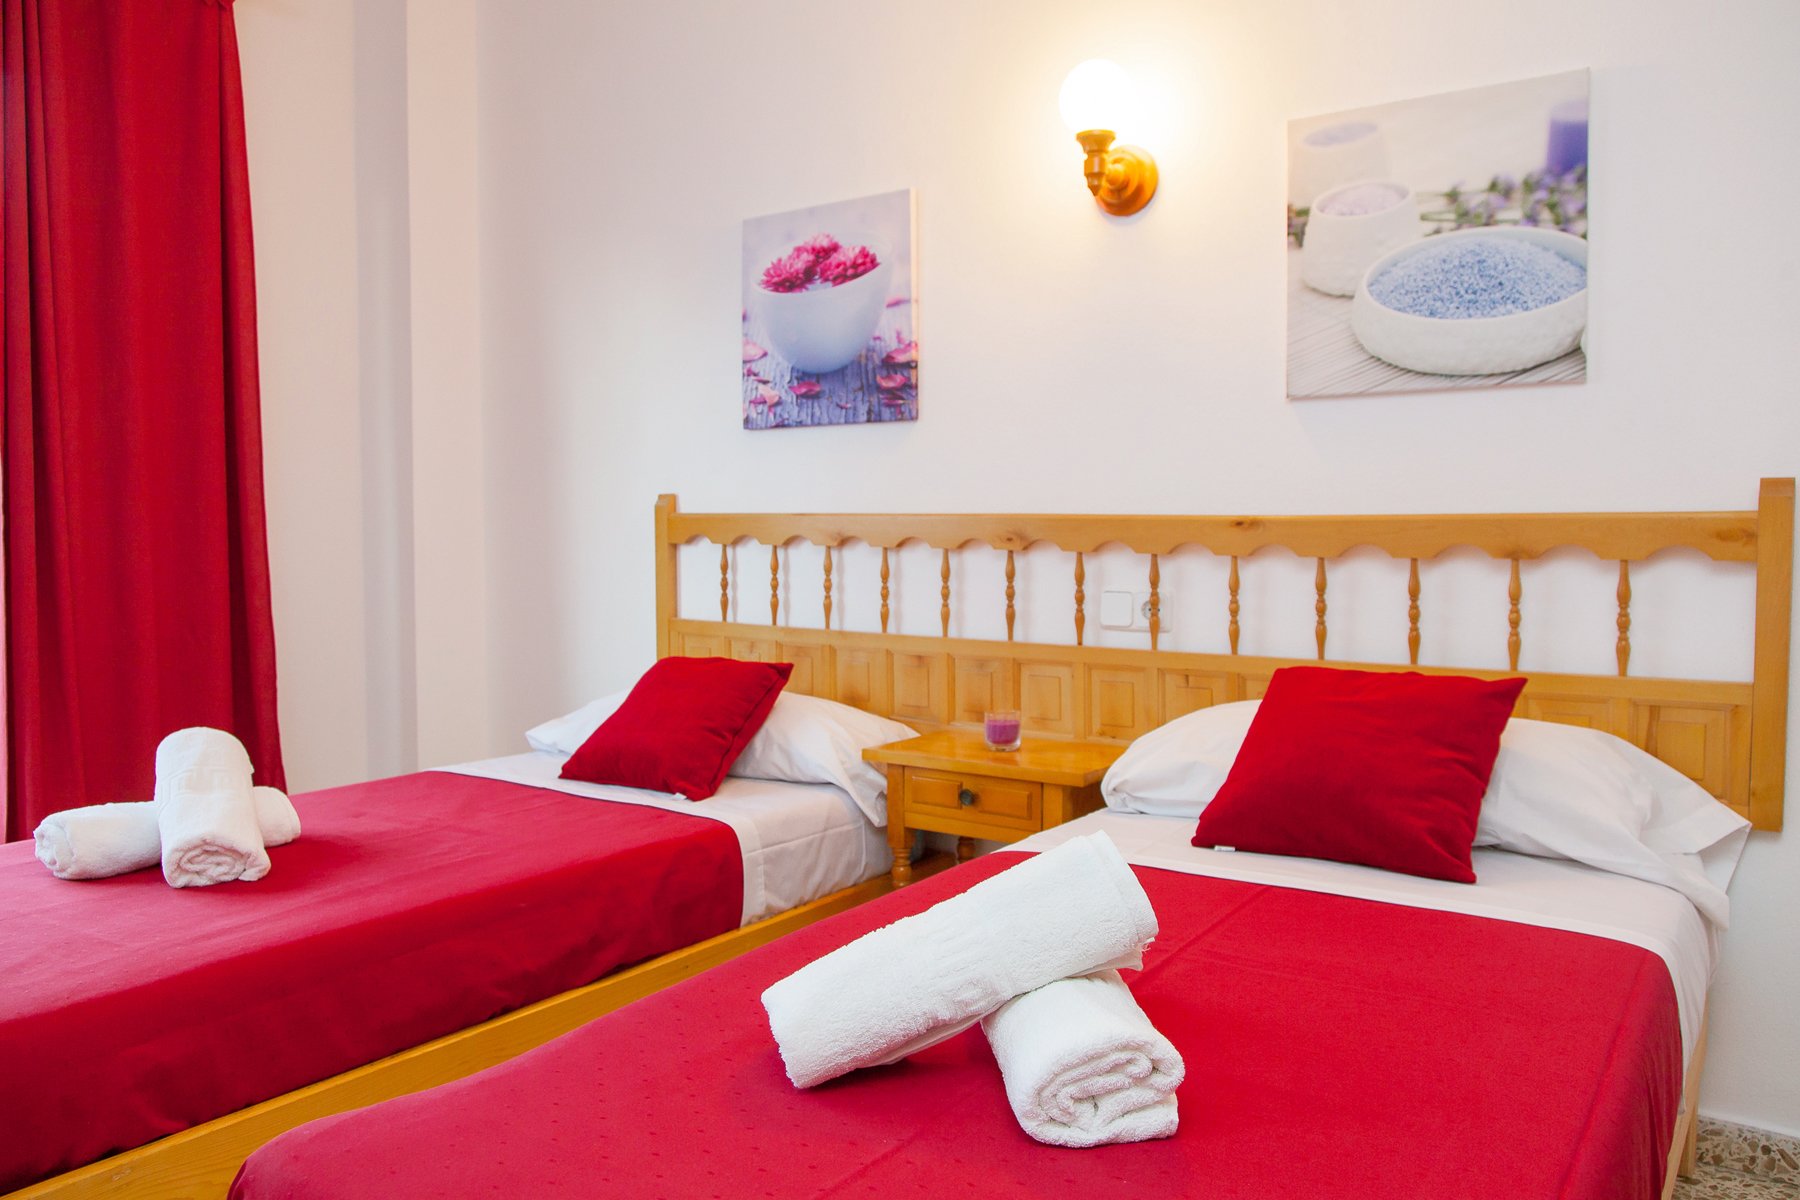 Apartamentos Puet - Image Gallery of rooms, hotel services, pool, breakfasts